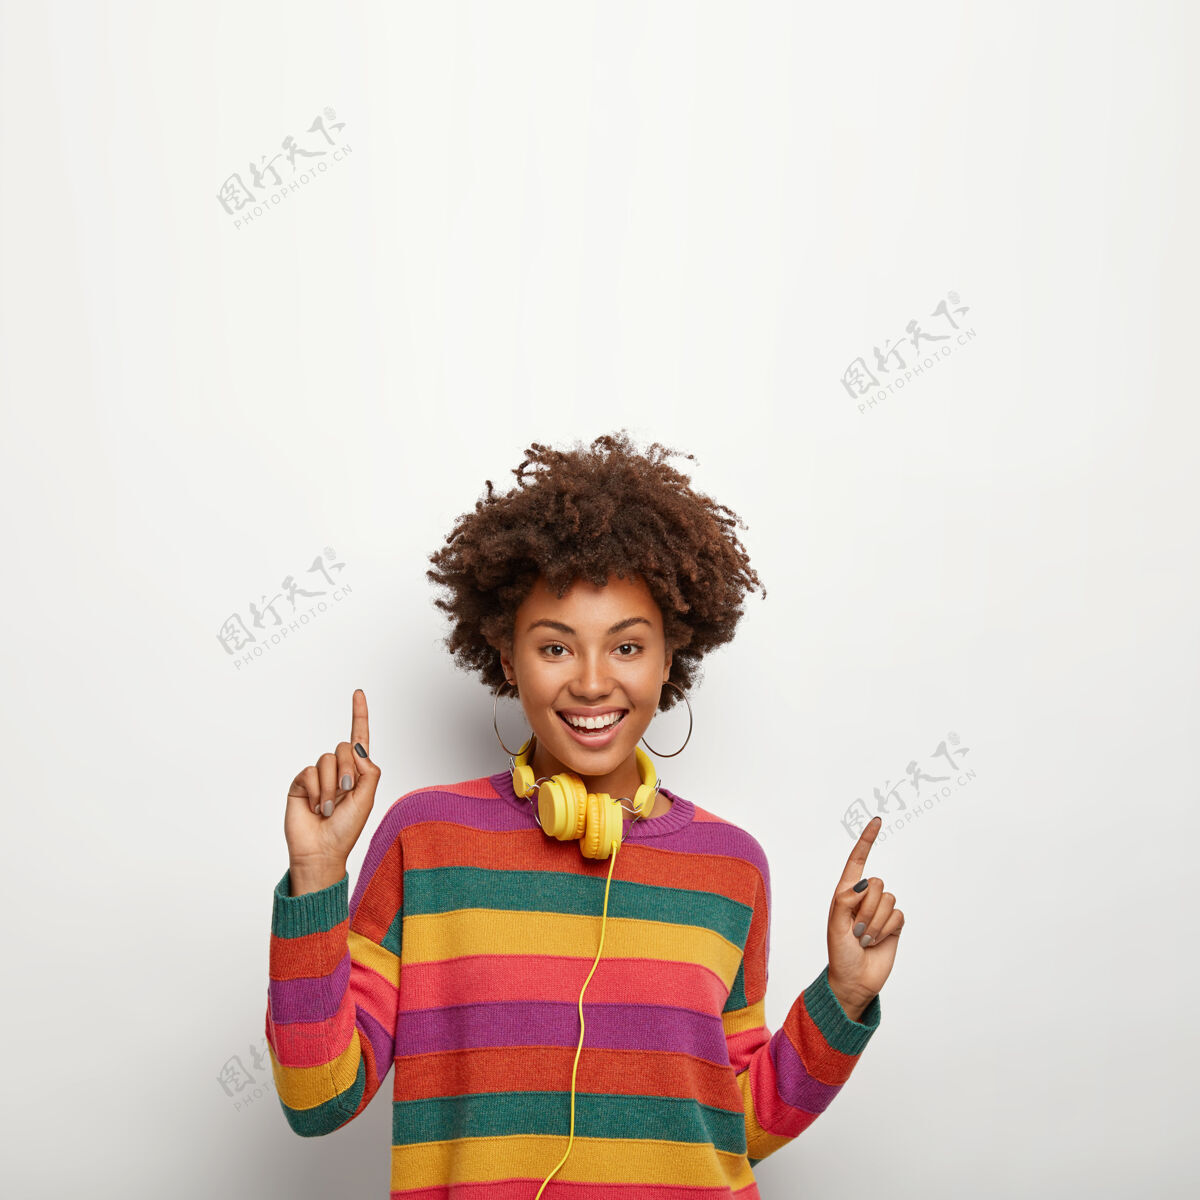 多彩美丽无忧无虑的时髦女孩 非洲式发型 靠着白墙 向上指 在这里说你的文字 用黄色耳机听喜欢的音乐 穿着条纹彩色套头衫休闲欢乐欢乐